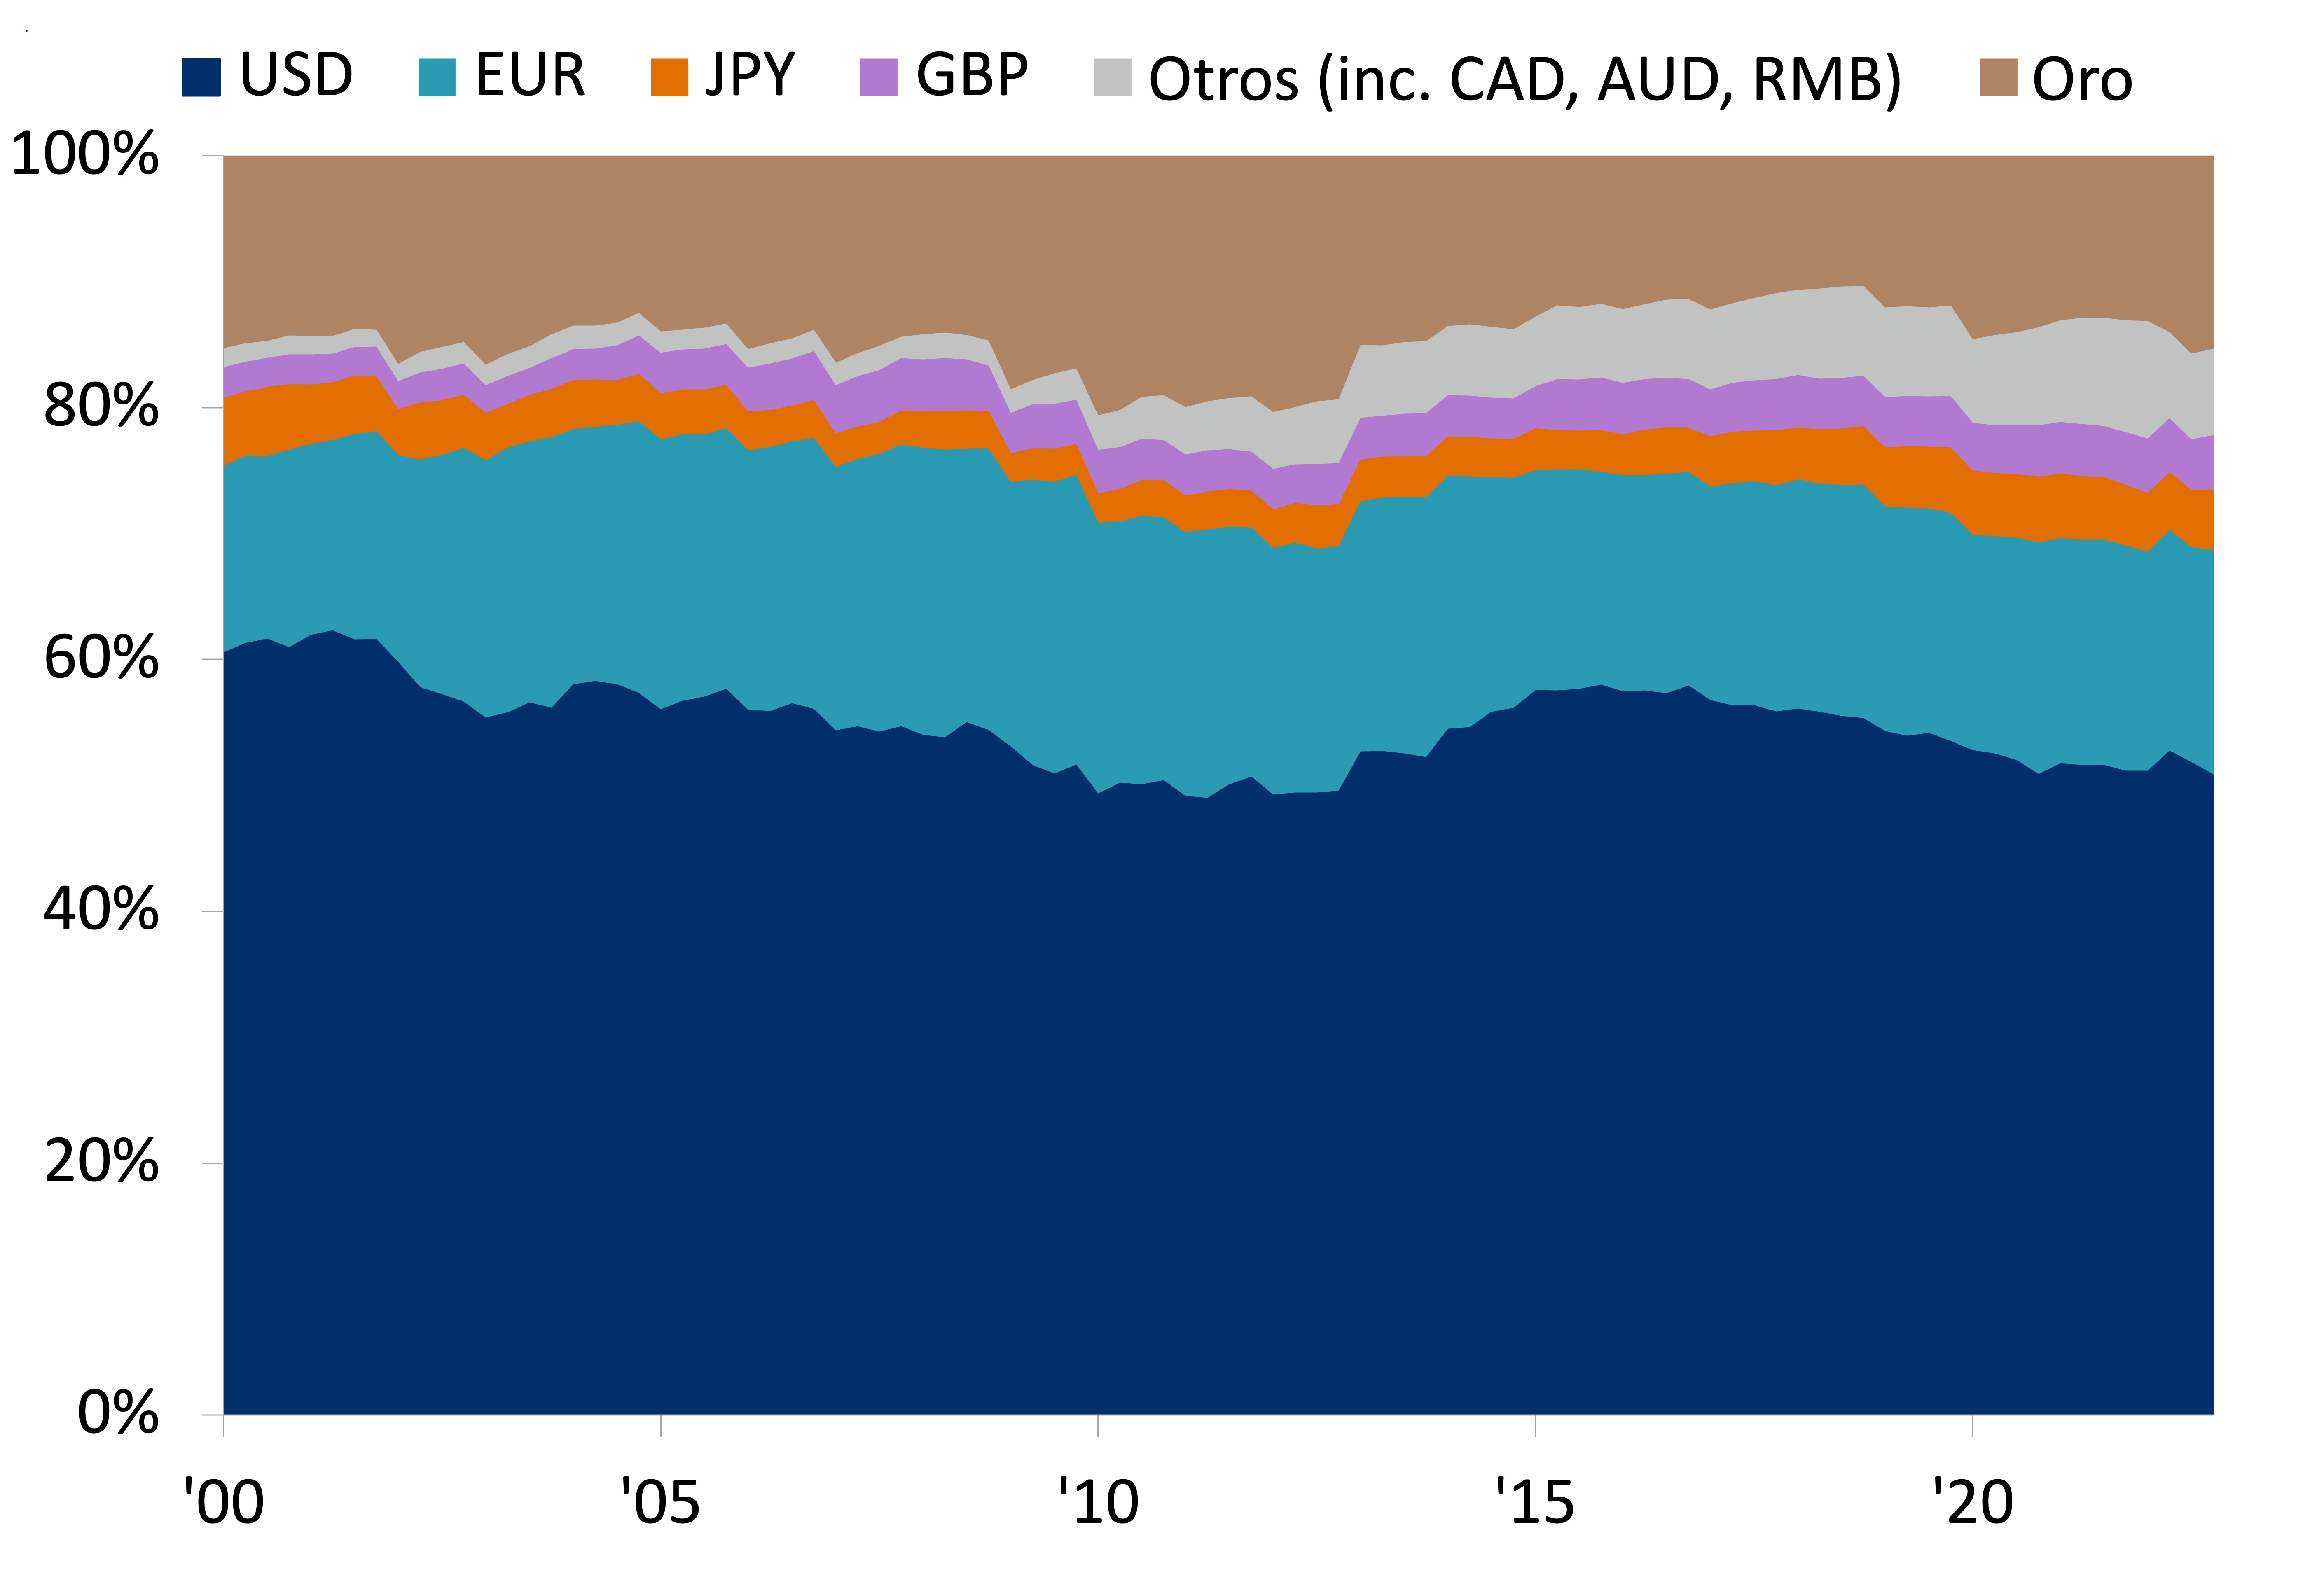 Composición del total de reservas de divisas del banco central, %